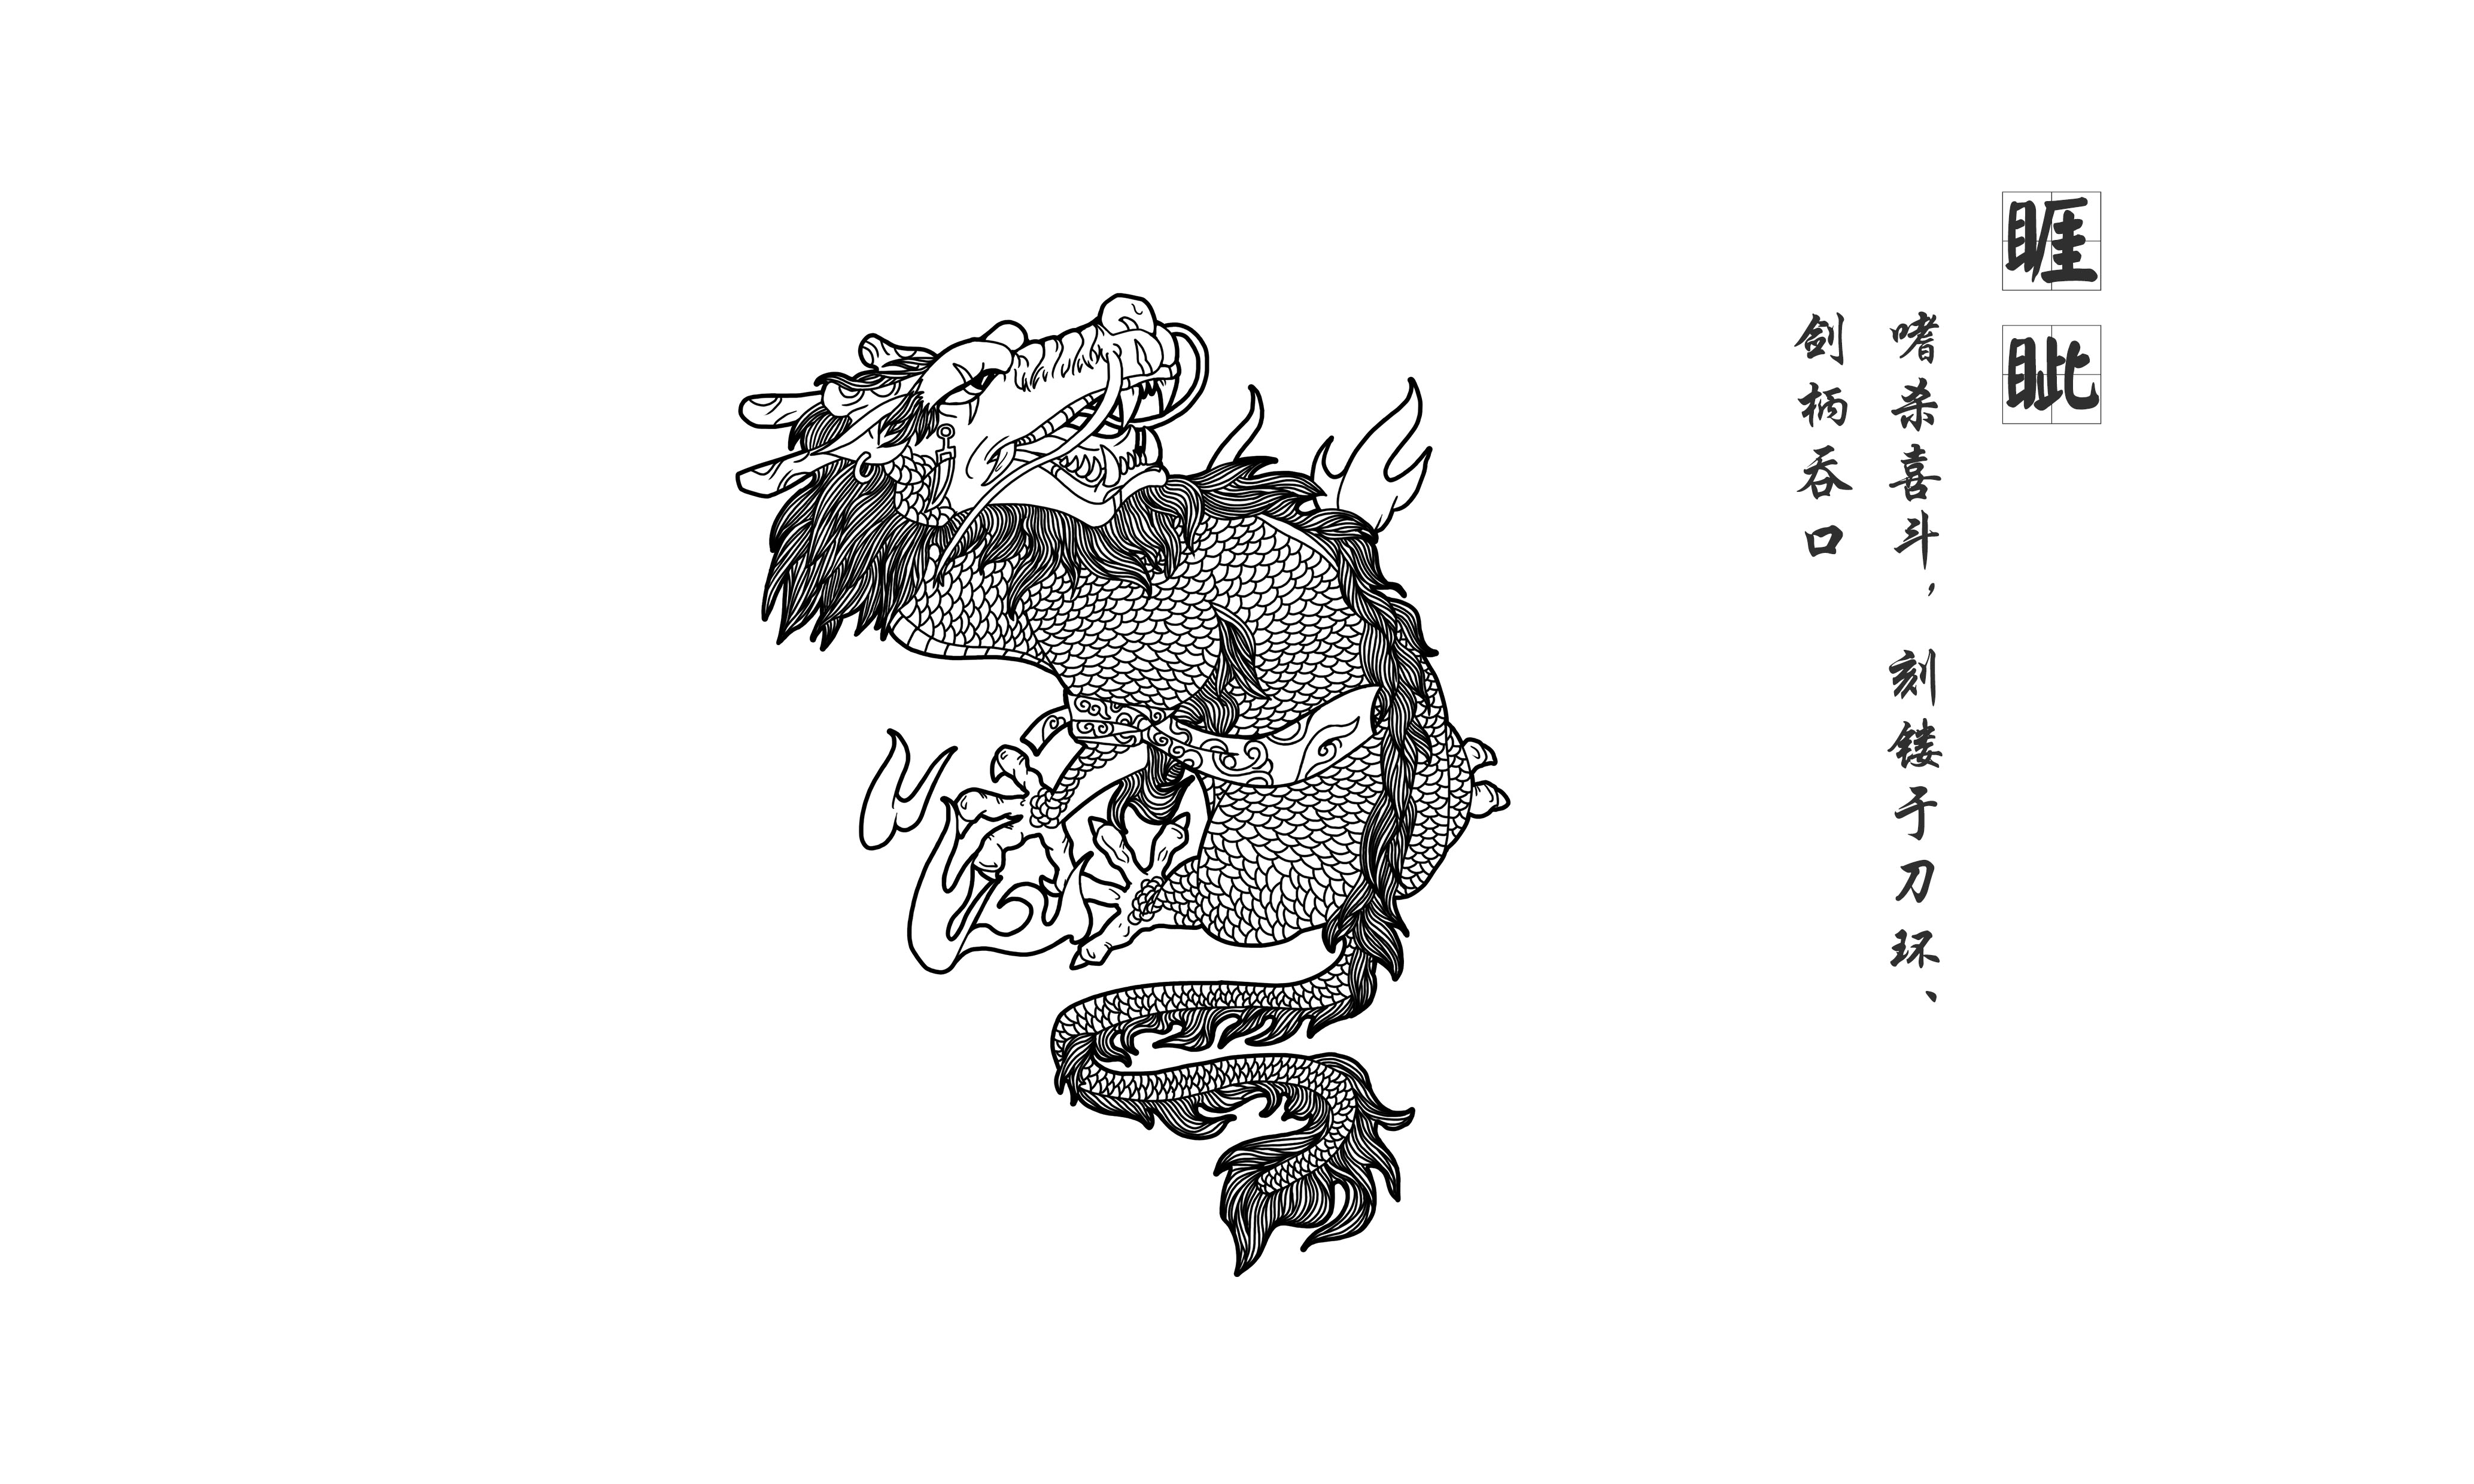 老二,睚眦 (yá zì)